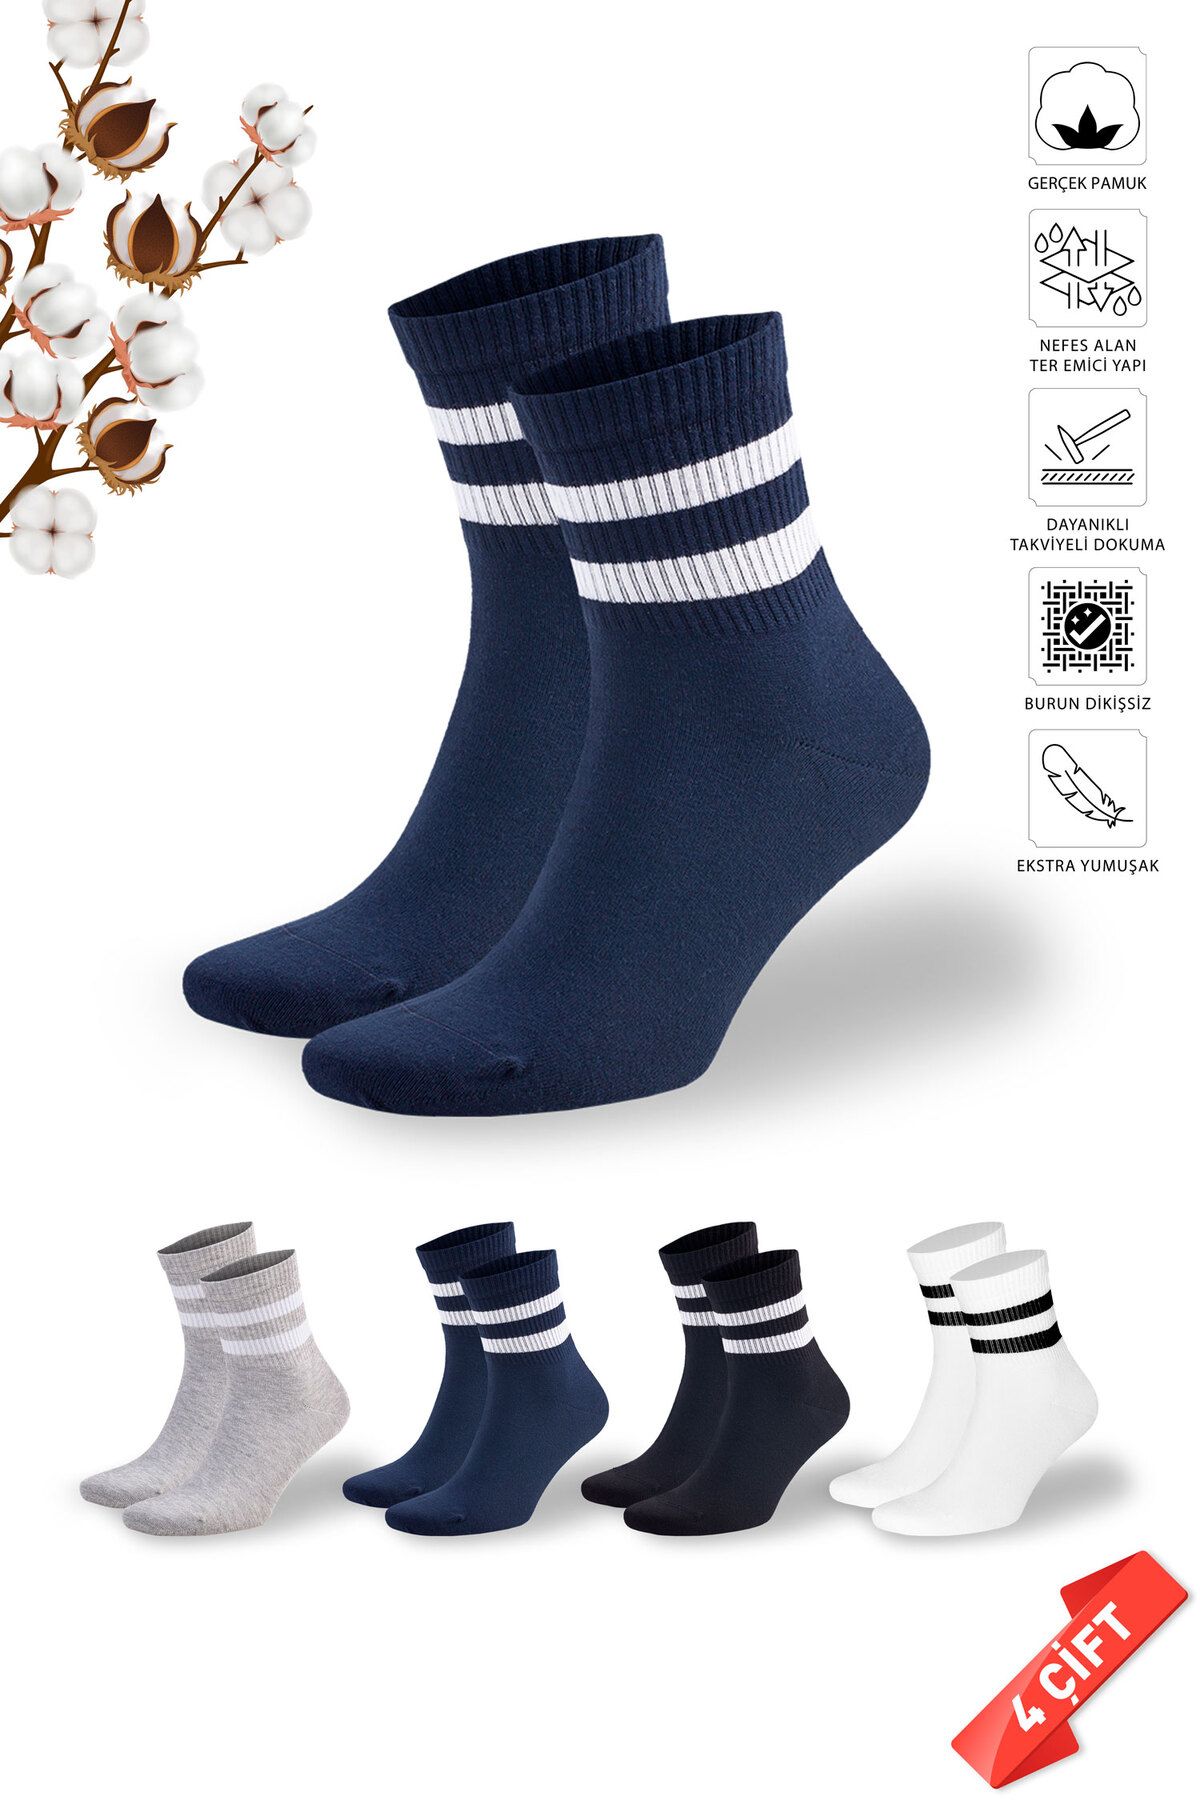 DAYCO Renkli Tenis Çizgili Erkek Kolej Çorabı 4 Çift - 650-41-45